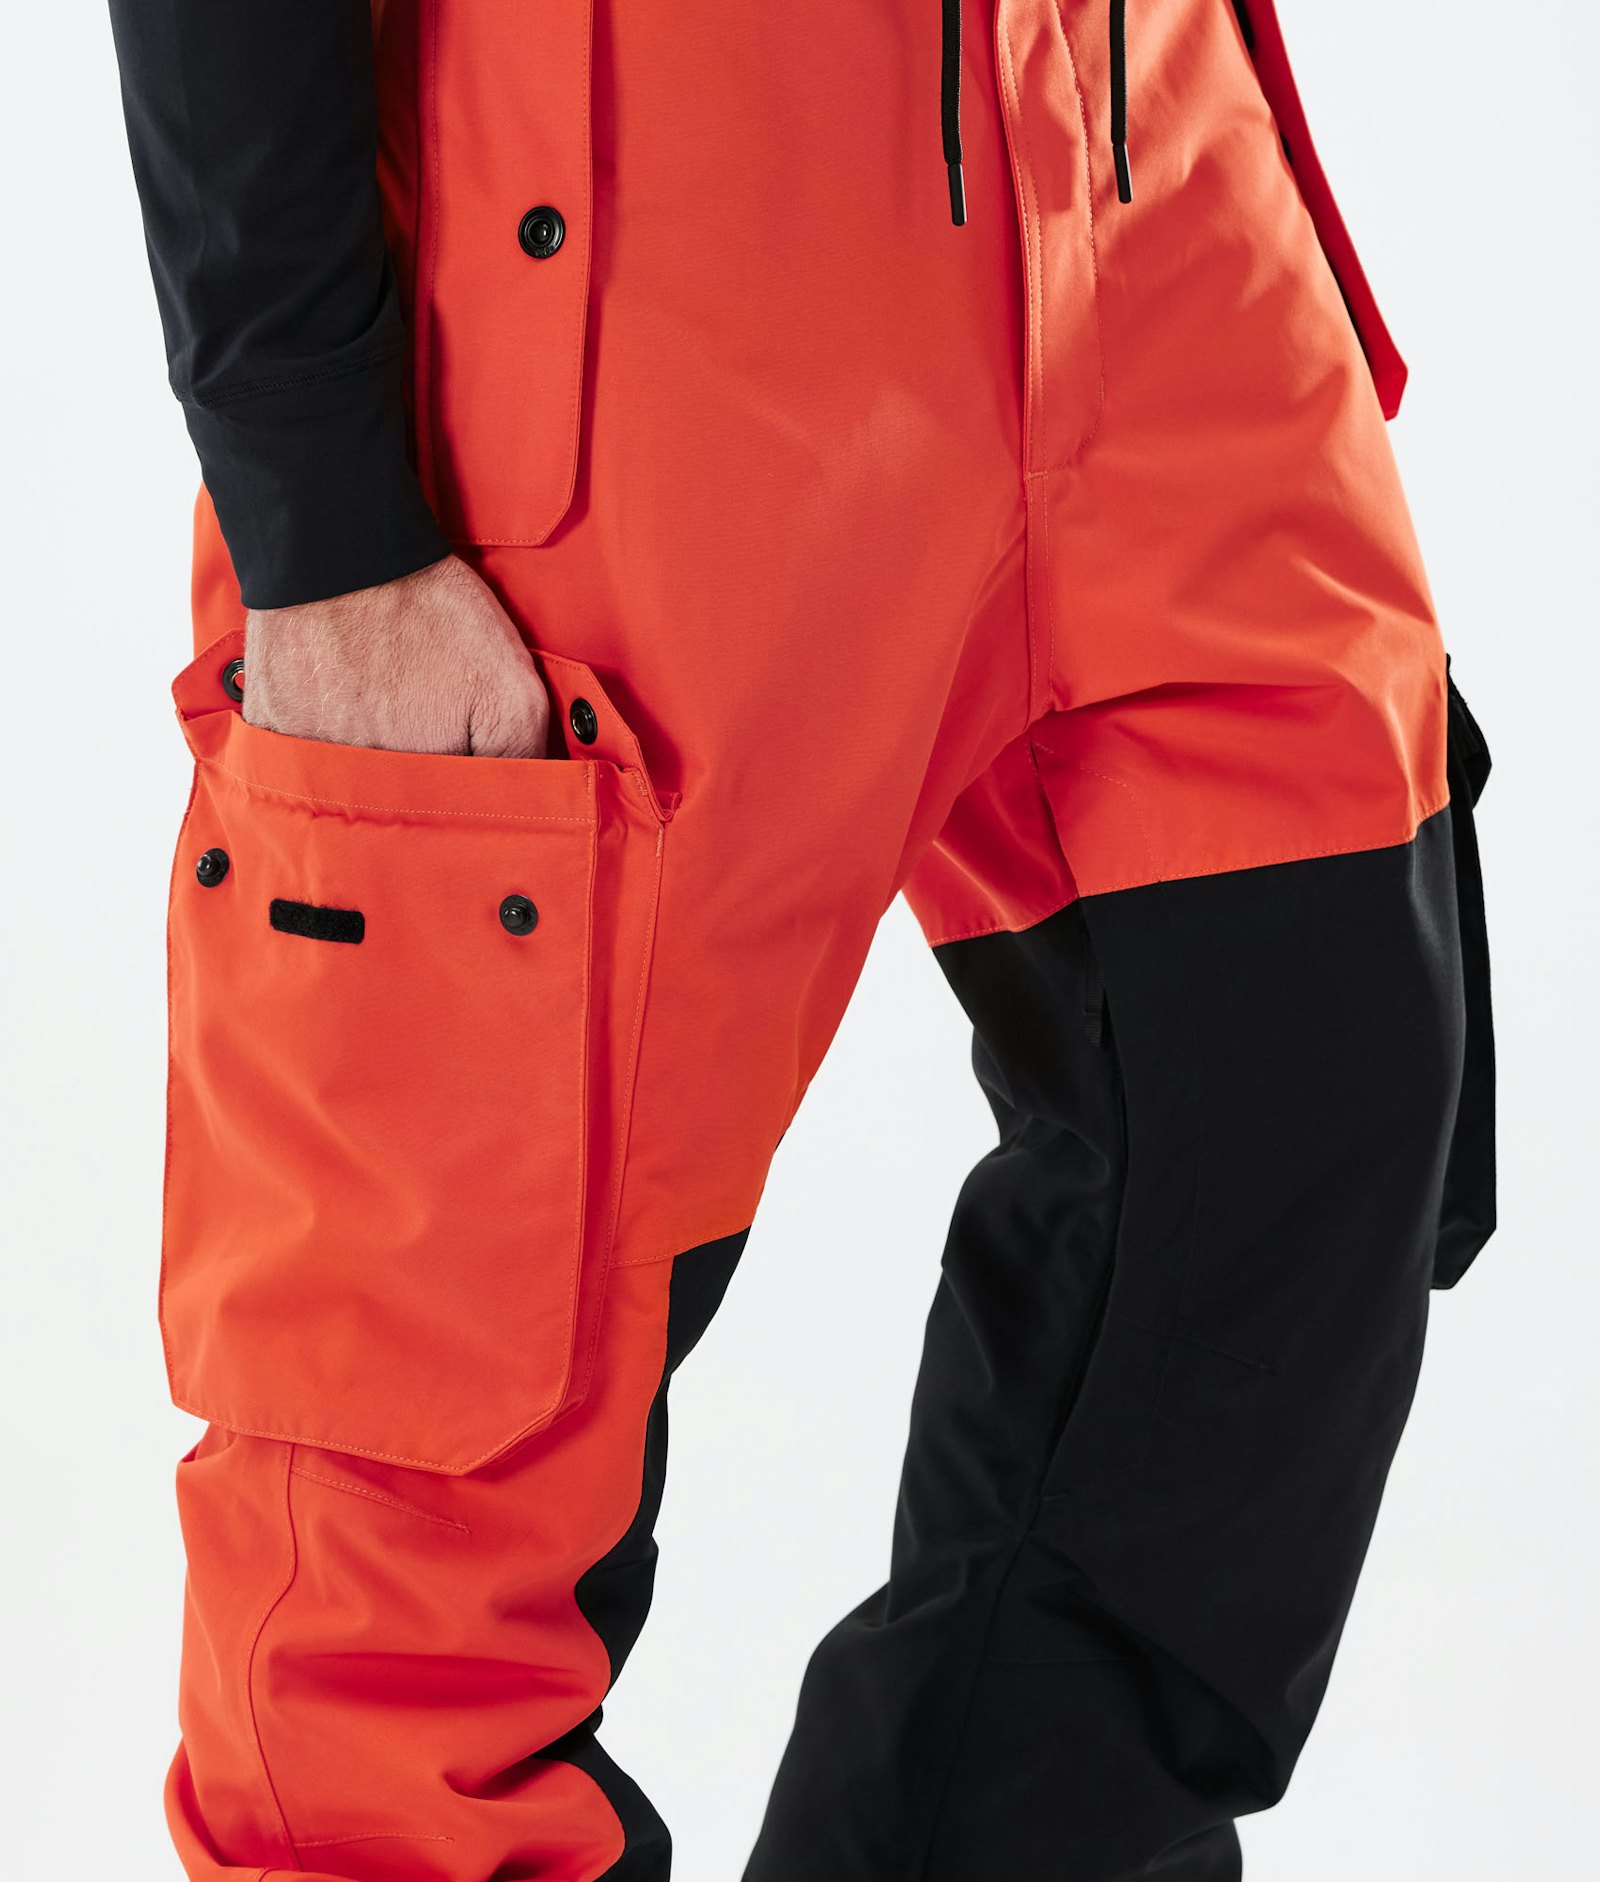 Adept 2021 Spodnie Narciarskie Mężczyźni Orange/Black